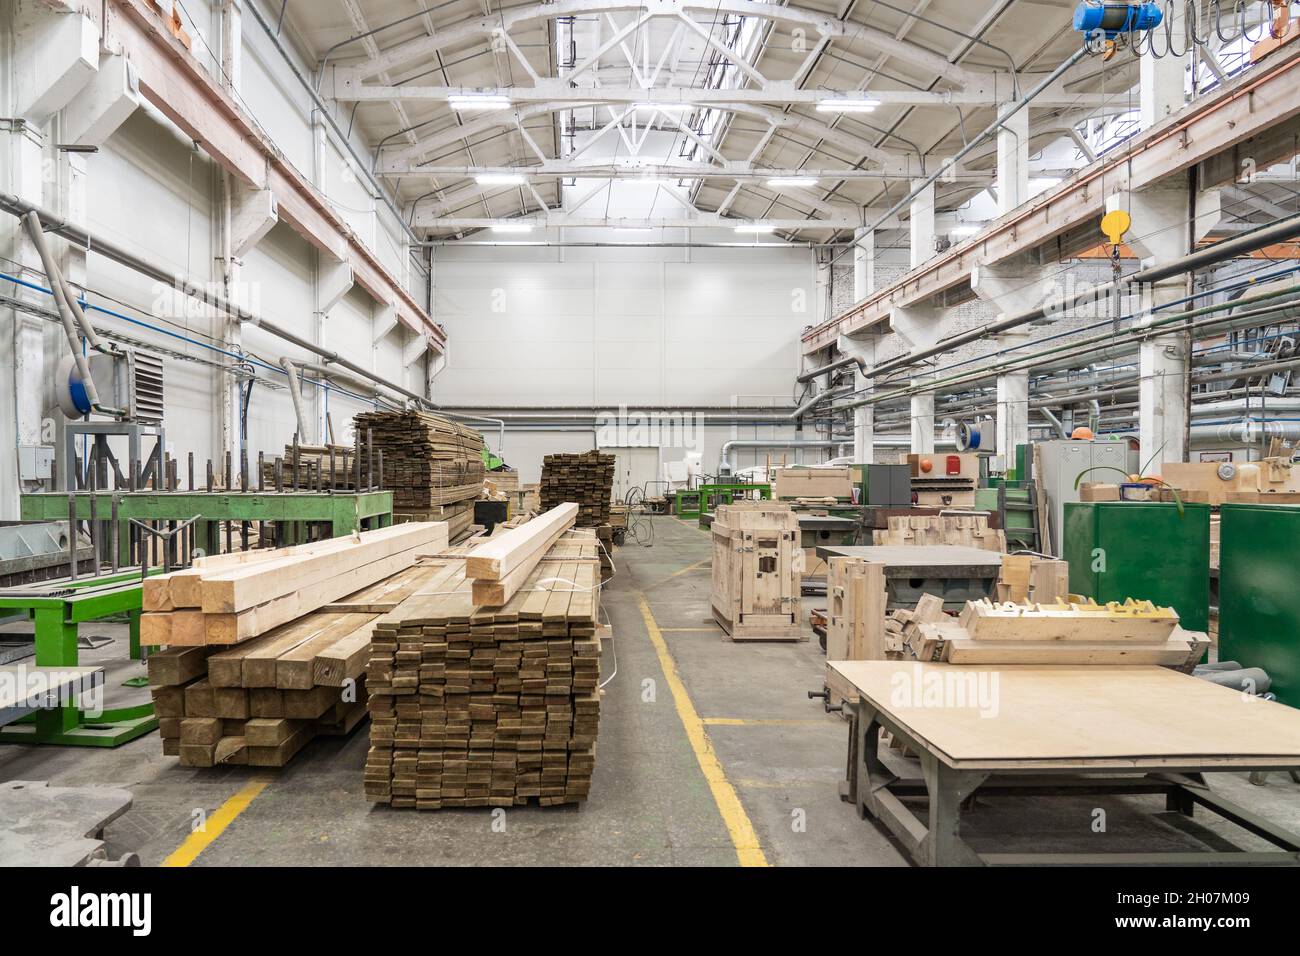 Atelier intérieur d'usine avec des piles de bois pour la fabrication de moules et de machines-outils de menuiserie. Banque D'Images